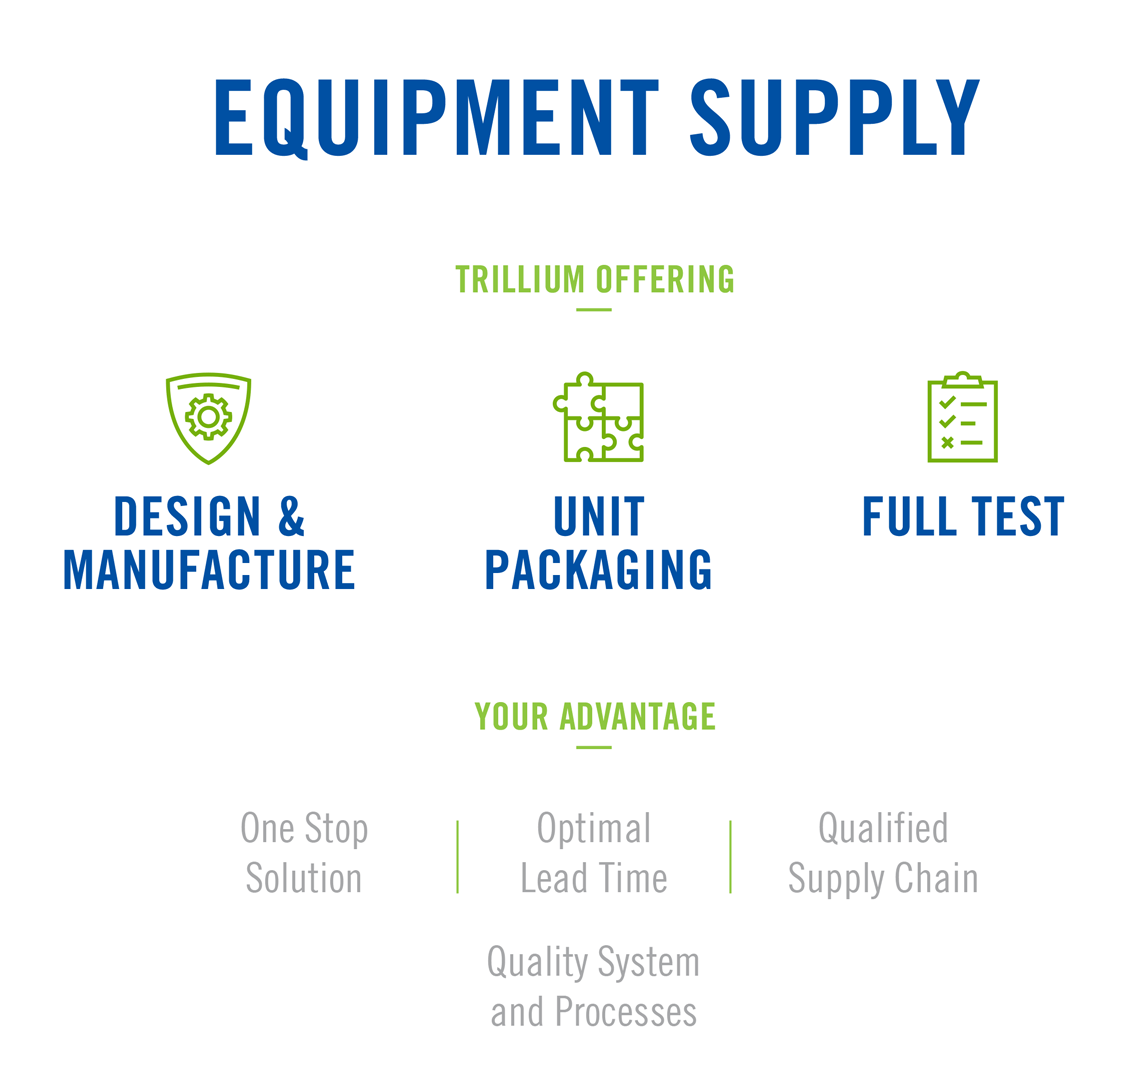 EquipmentSupply